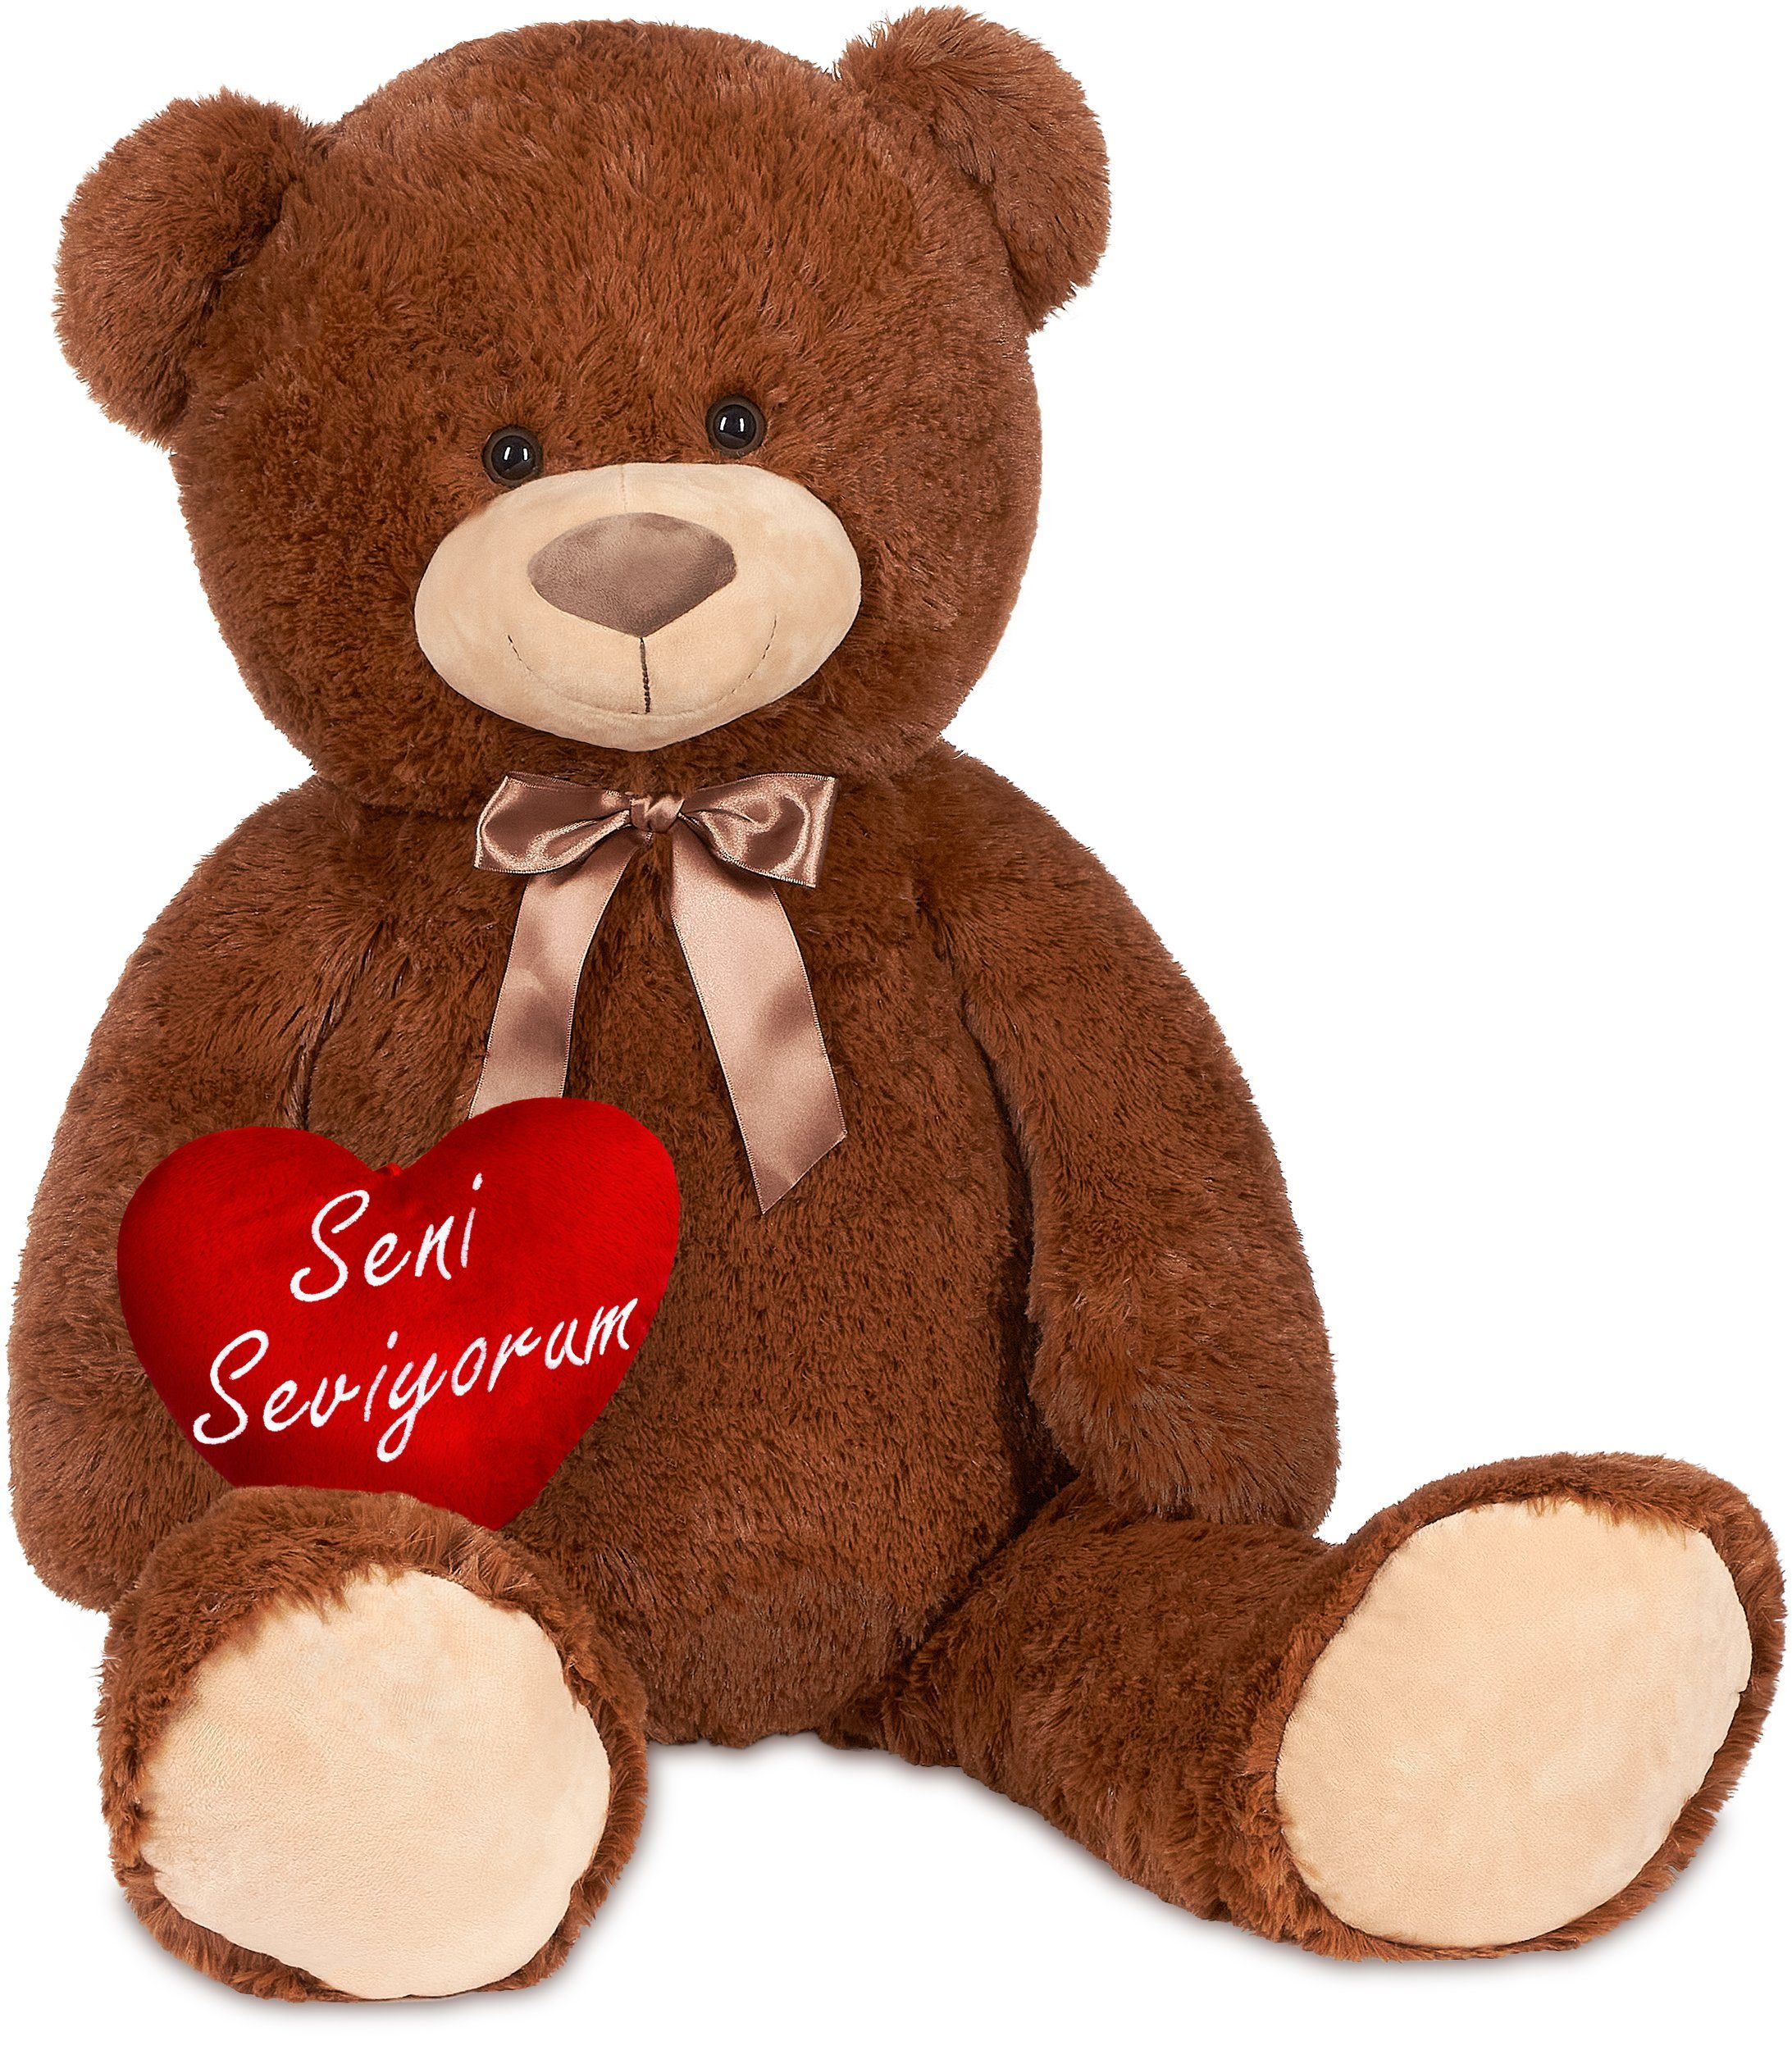 Plüsch Teddy Bär rotem Herz Schleife sitzend 33cm Kuscheltier Teddybär braun 